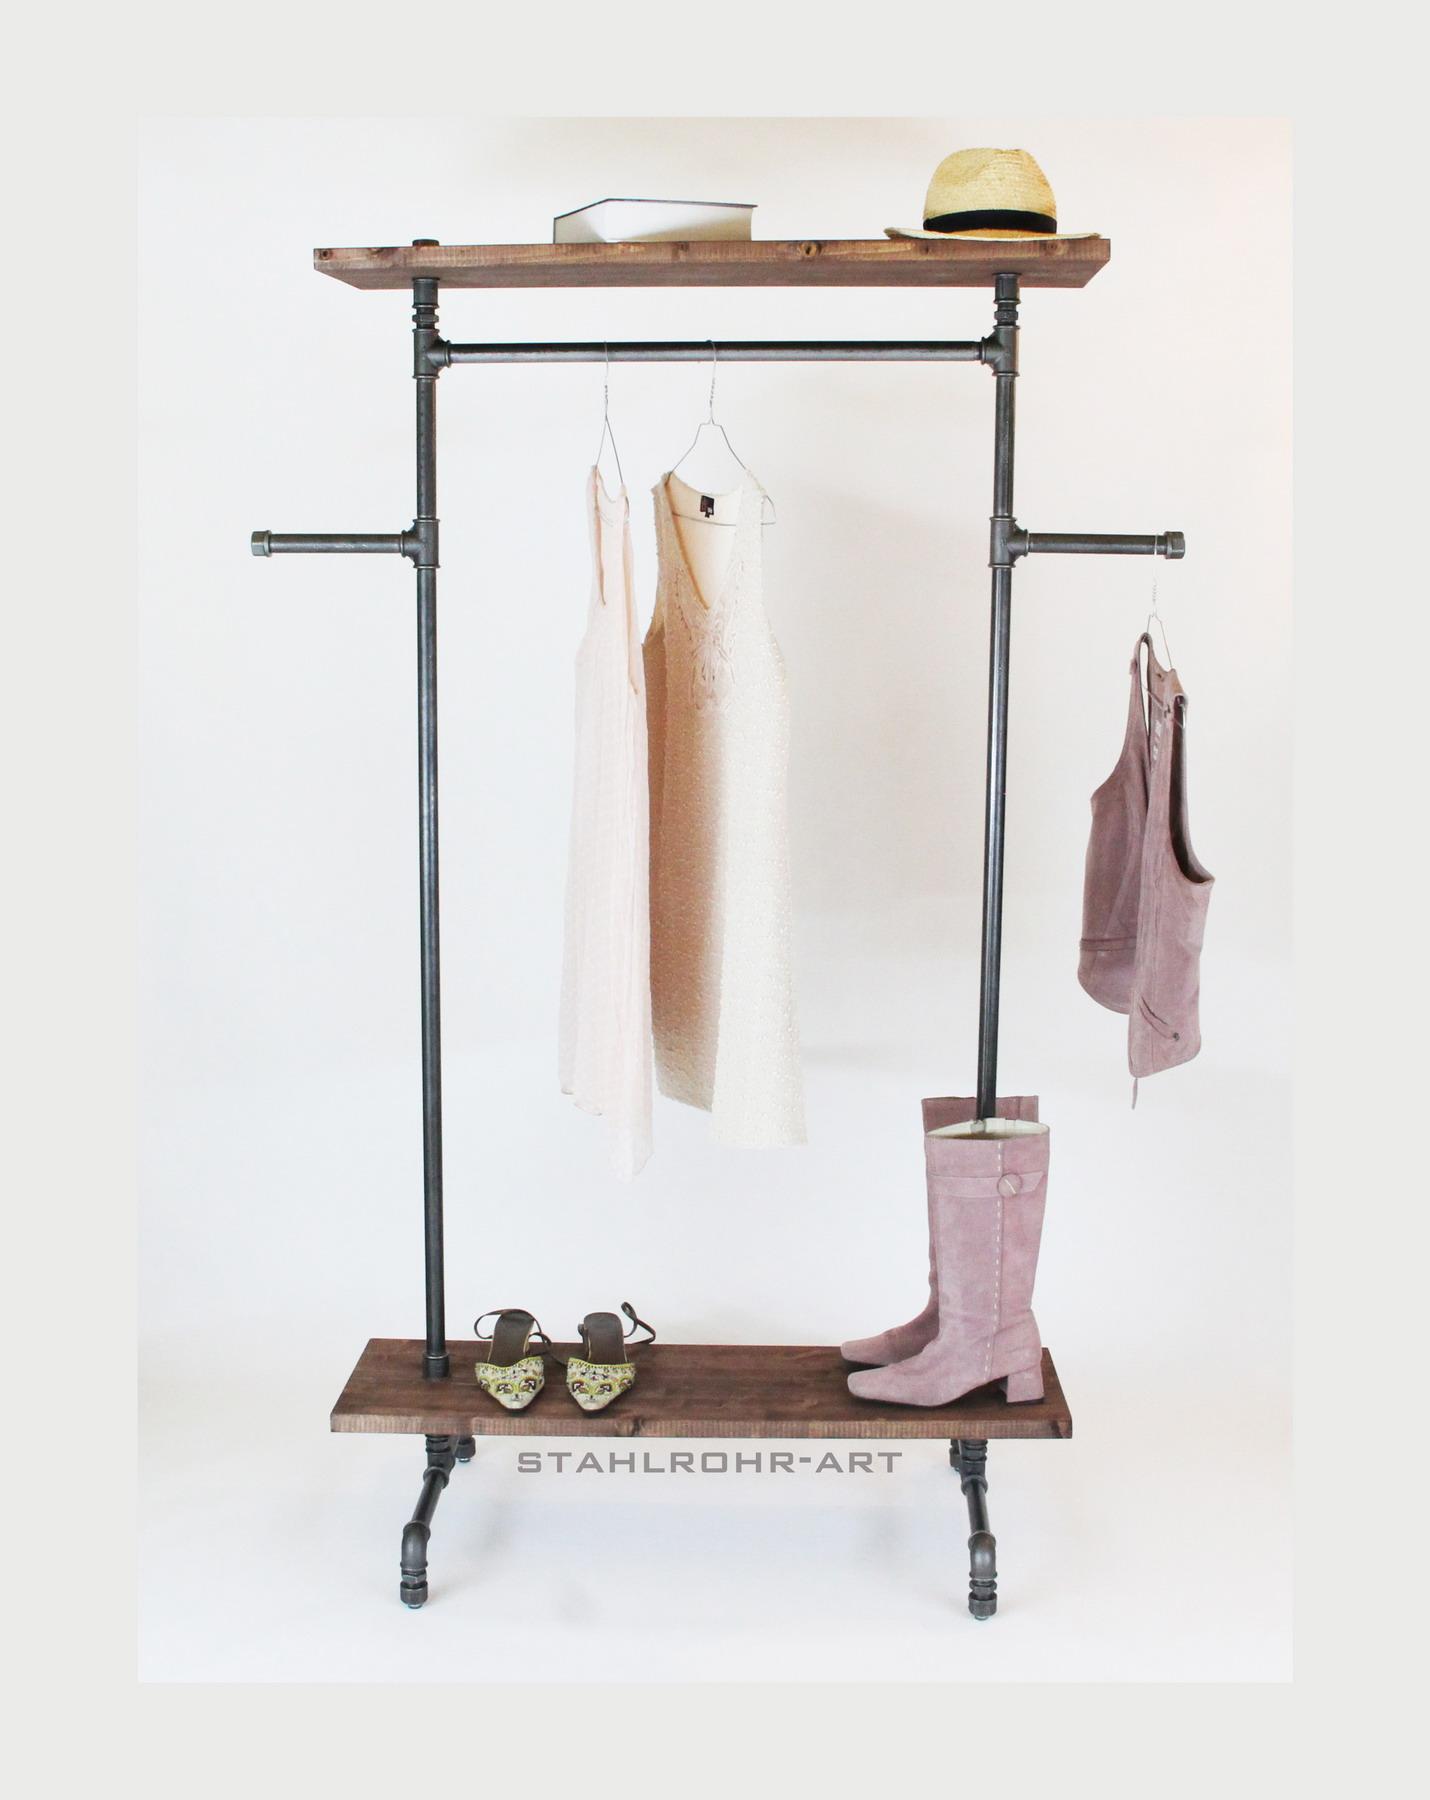 stahlrohr-art Design Garderobe aus Stahlrohr
Zeitloses robustes Industrie Vintage Design.
info@stahlrohr-art